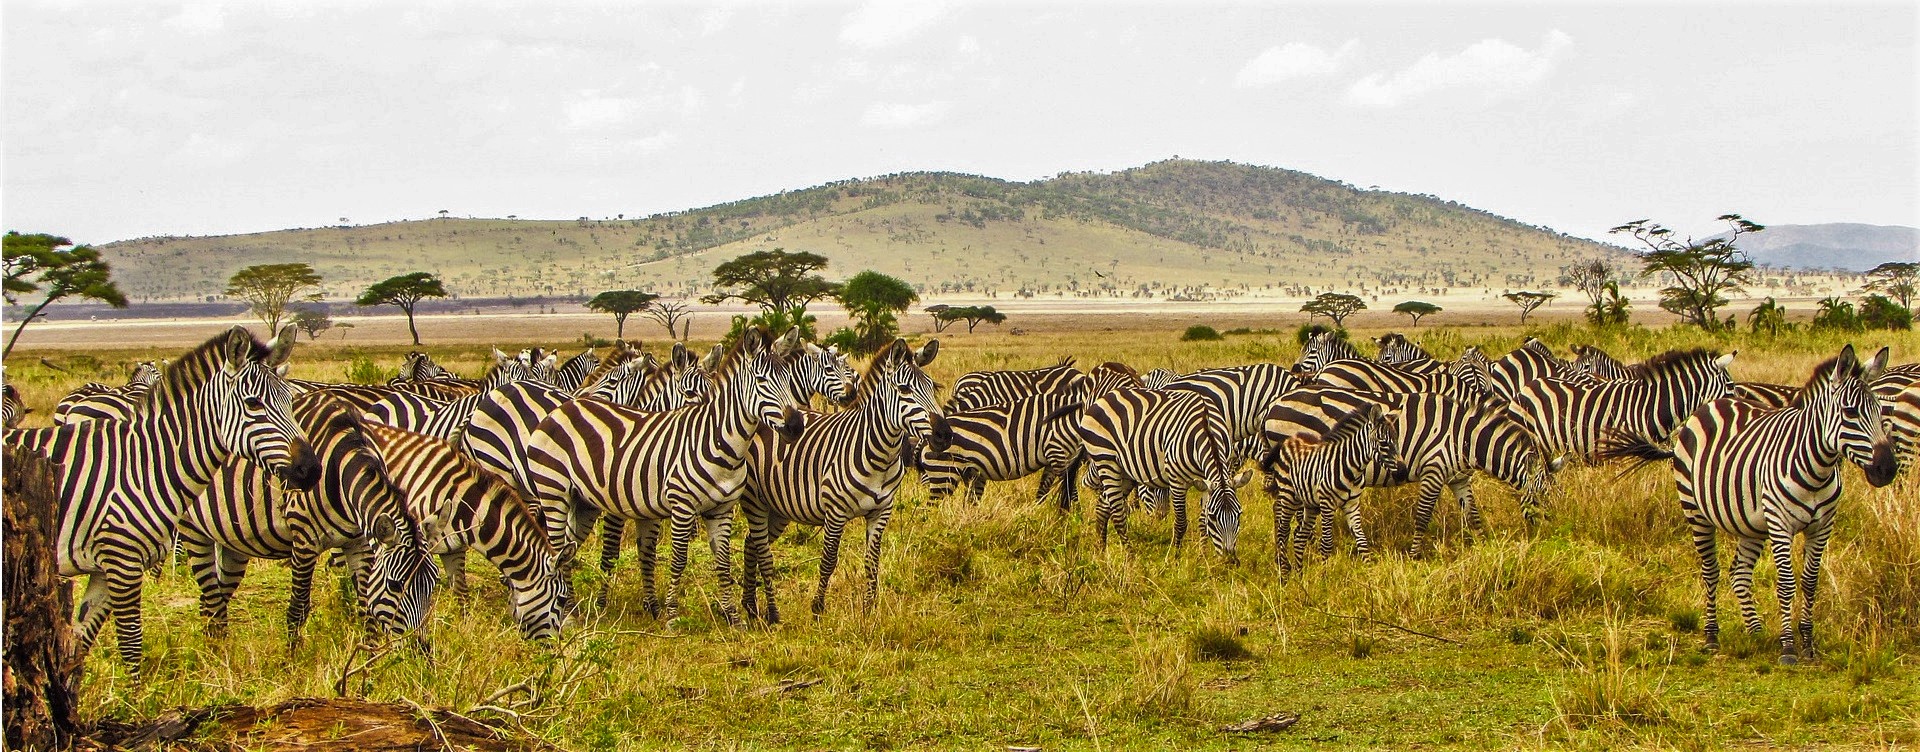 Safari trip to Tanzania